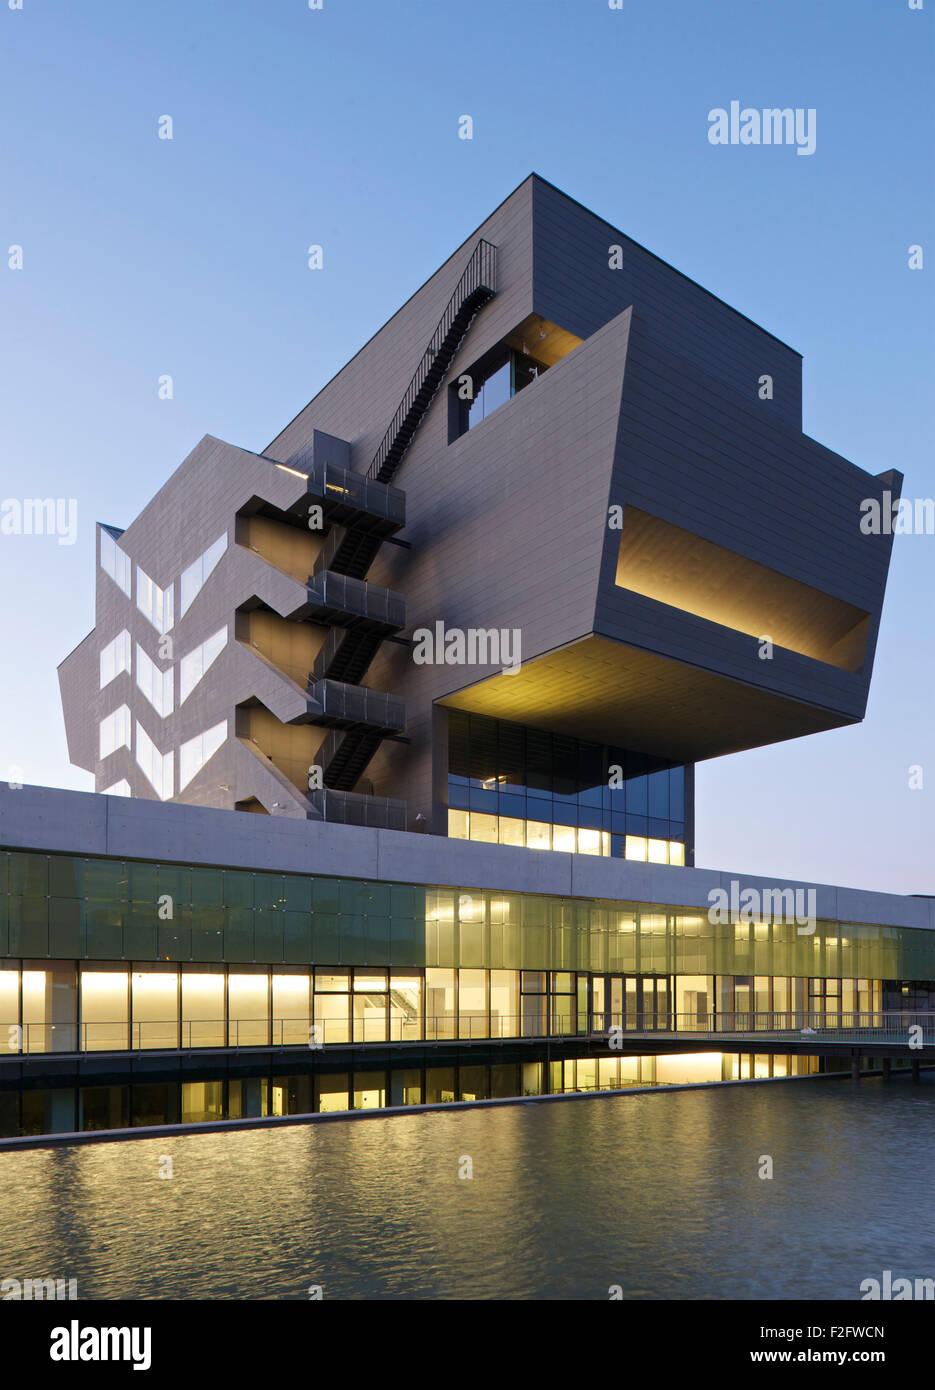 Vista in elevazione della cucitrice al crepuscolo. Museu del Disseny de Barcelona, Barcelona, Spagna. Architetto: MBM Arquitectes, 2013. Foto Stock